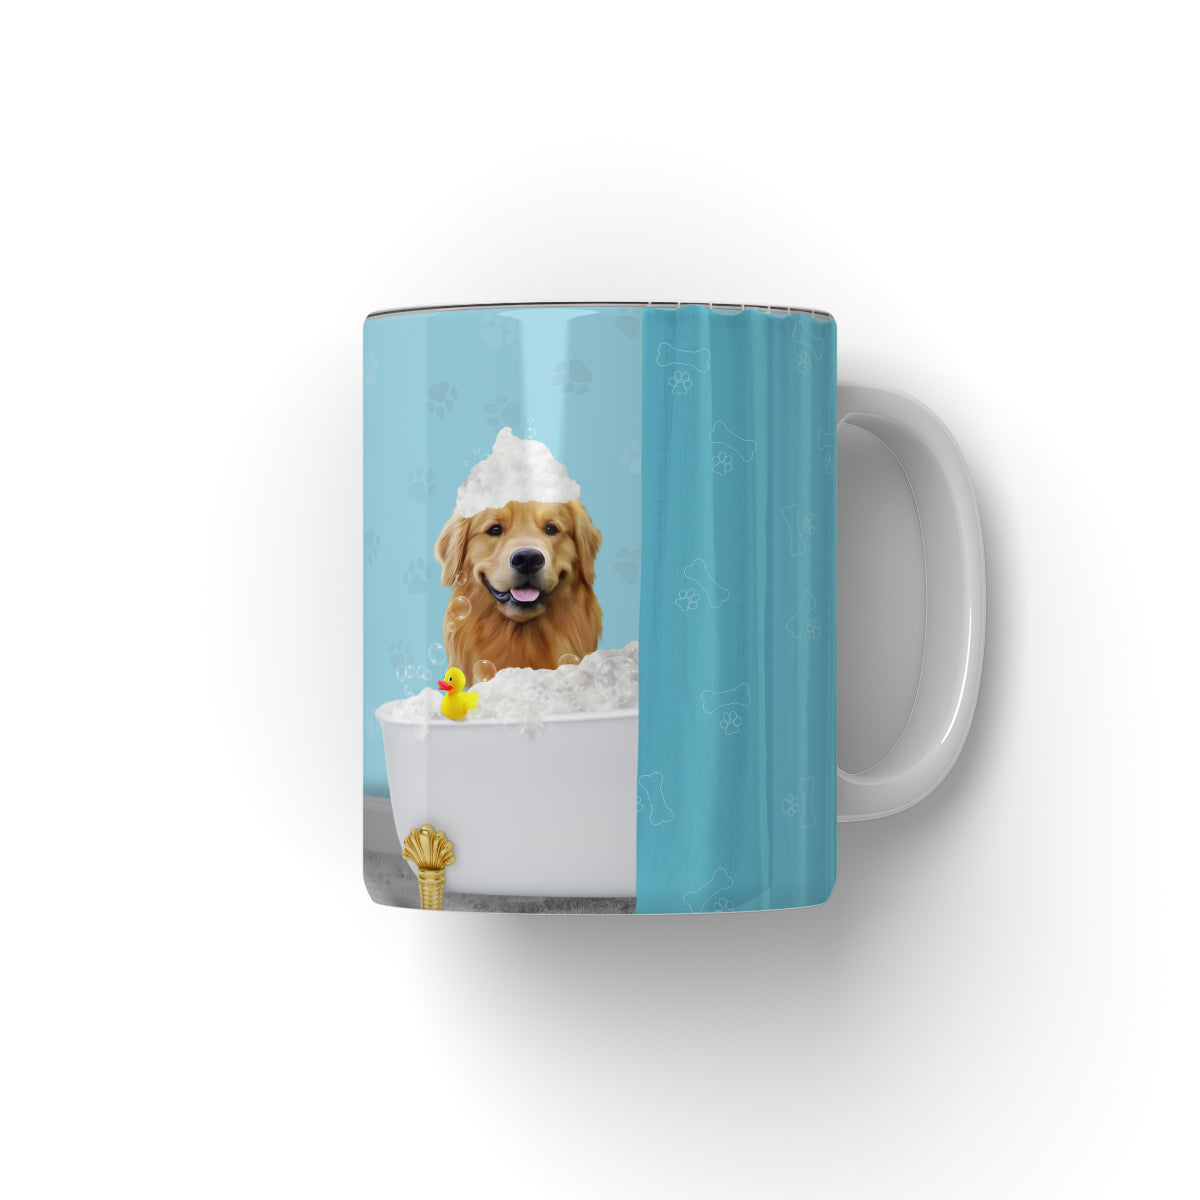 Paw & Glory, pawandglory, custom mug with dogs, personalized dog and owner mug, dog mug personalized, personalised puppy mug, Pet Portrait Mug